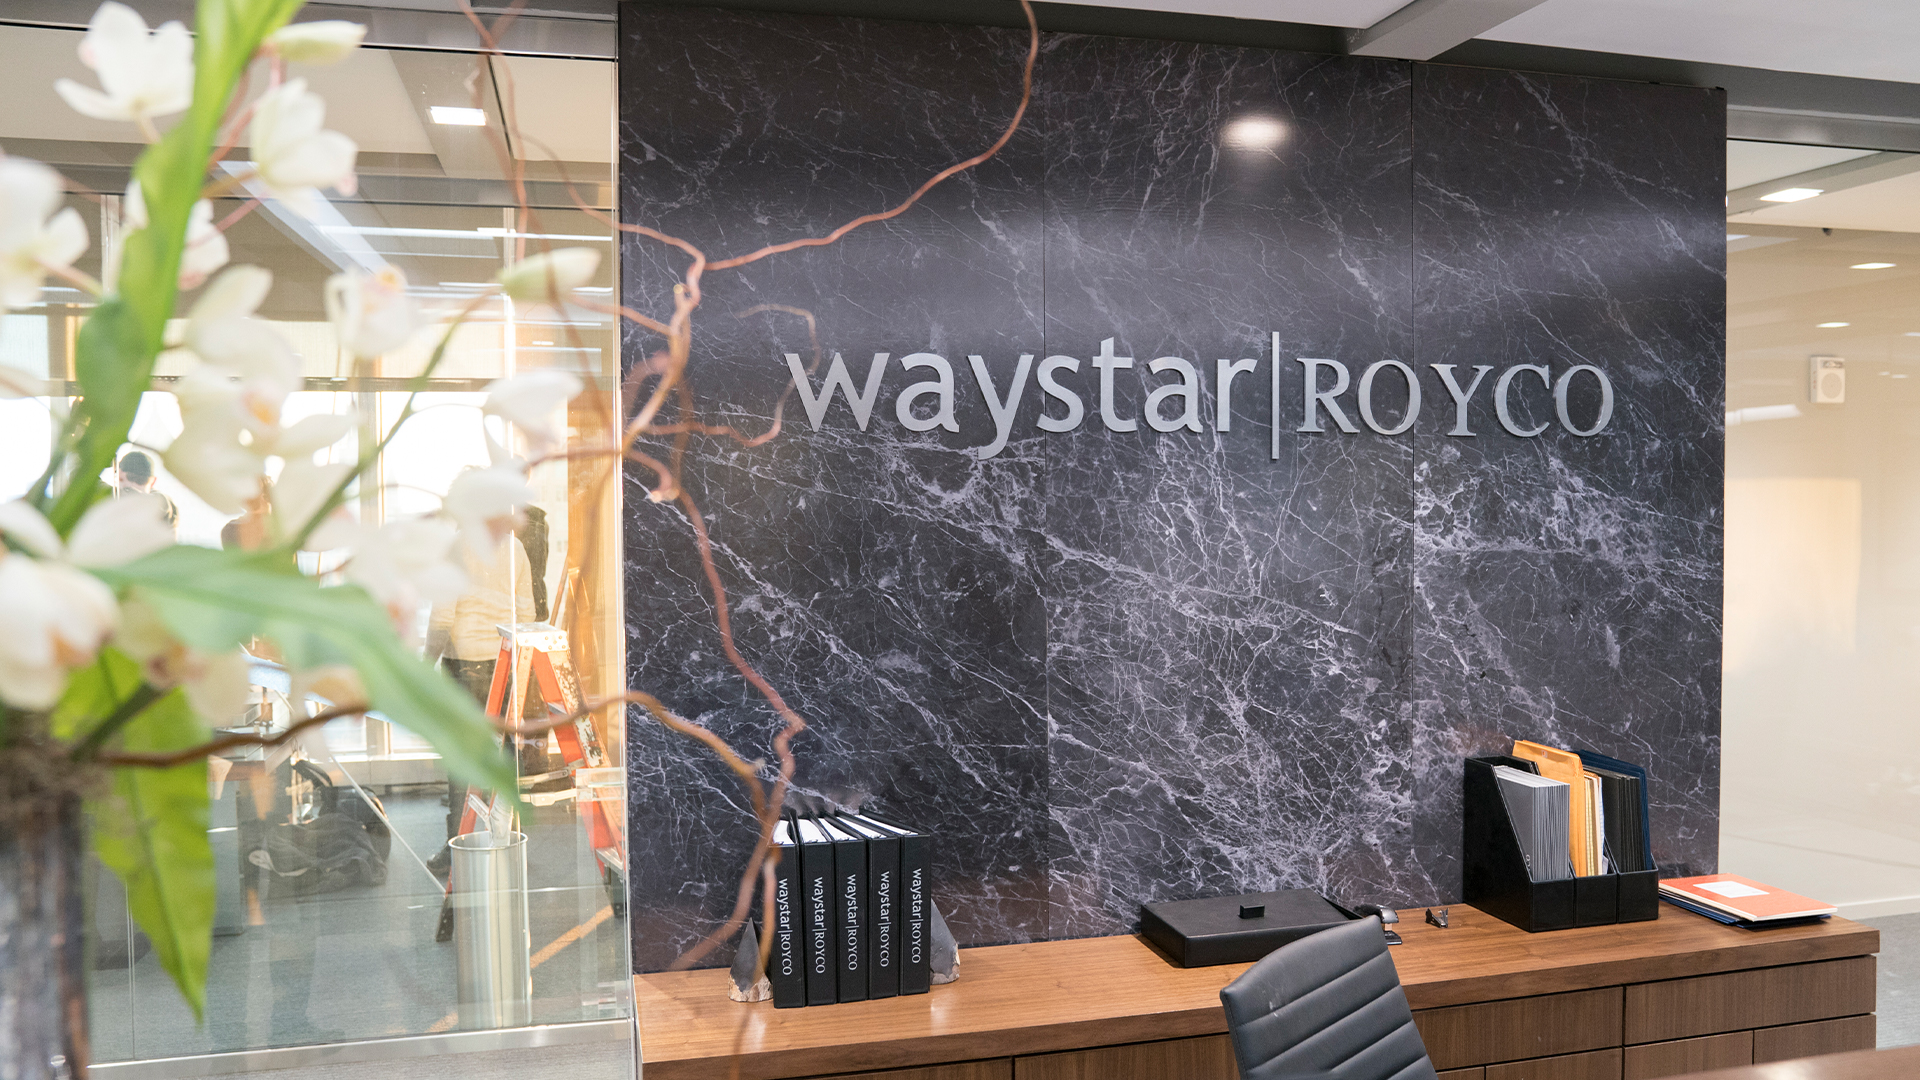 Succession - Waystar Royco office